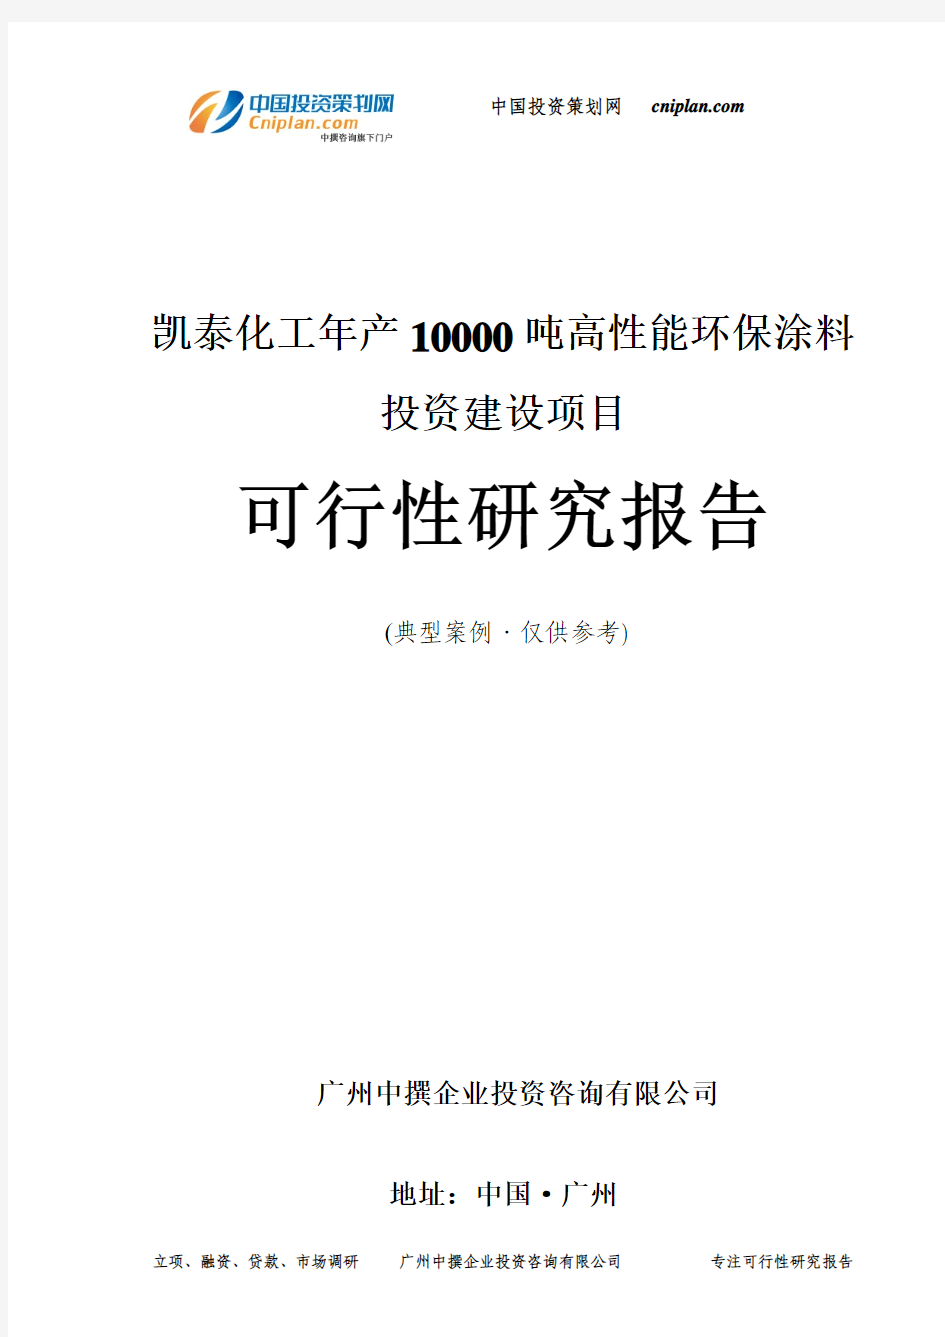 凯泰化工年产10000吨高性能环保涂料投资建设项目可行性研究报告-广州中撰咨询